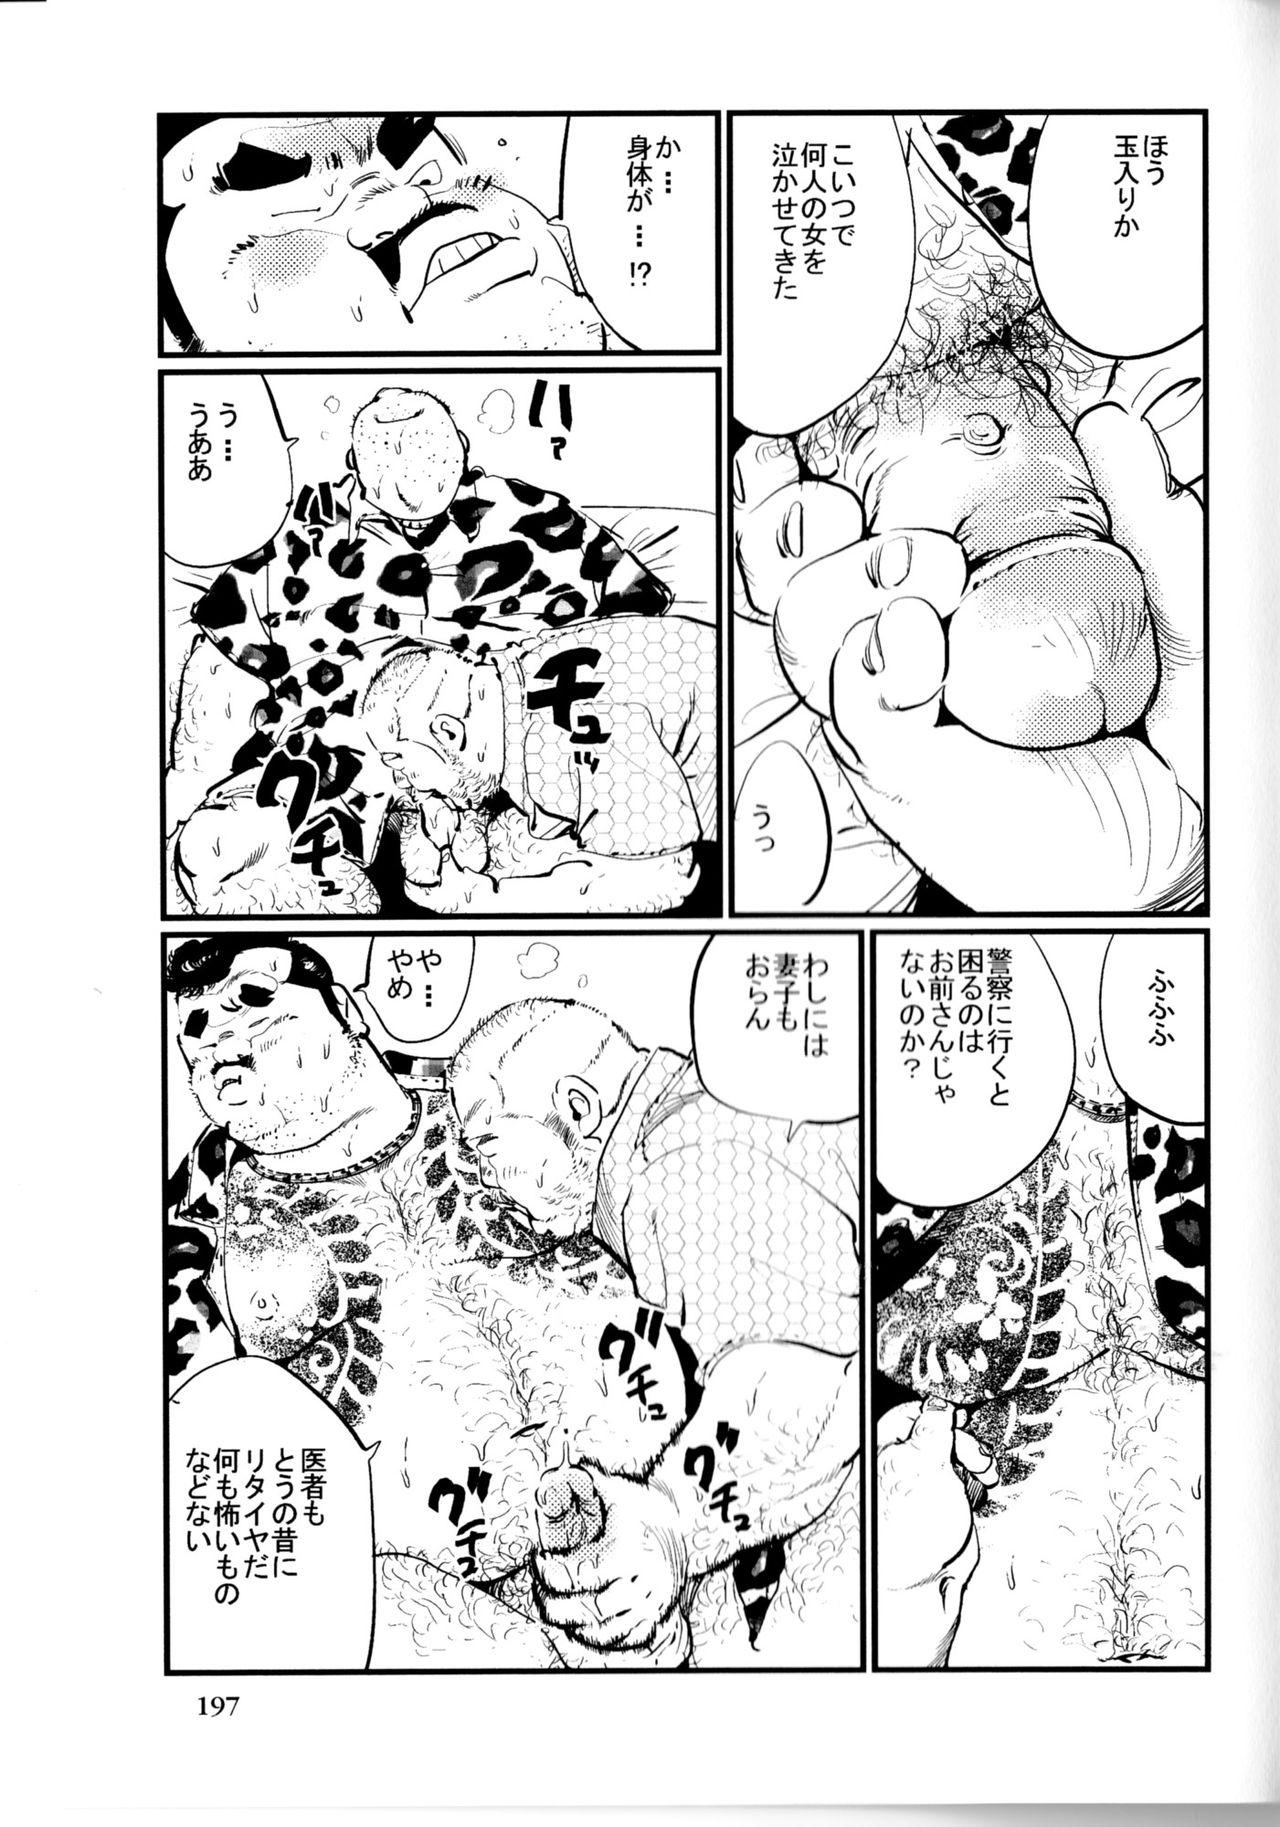 The Tenkei Mondai Nylons - Page 5